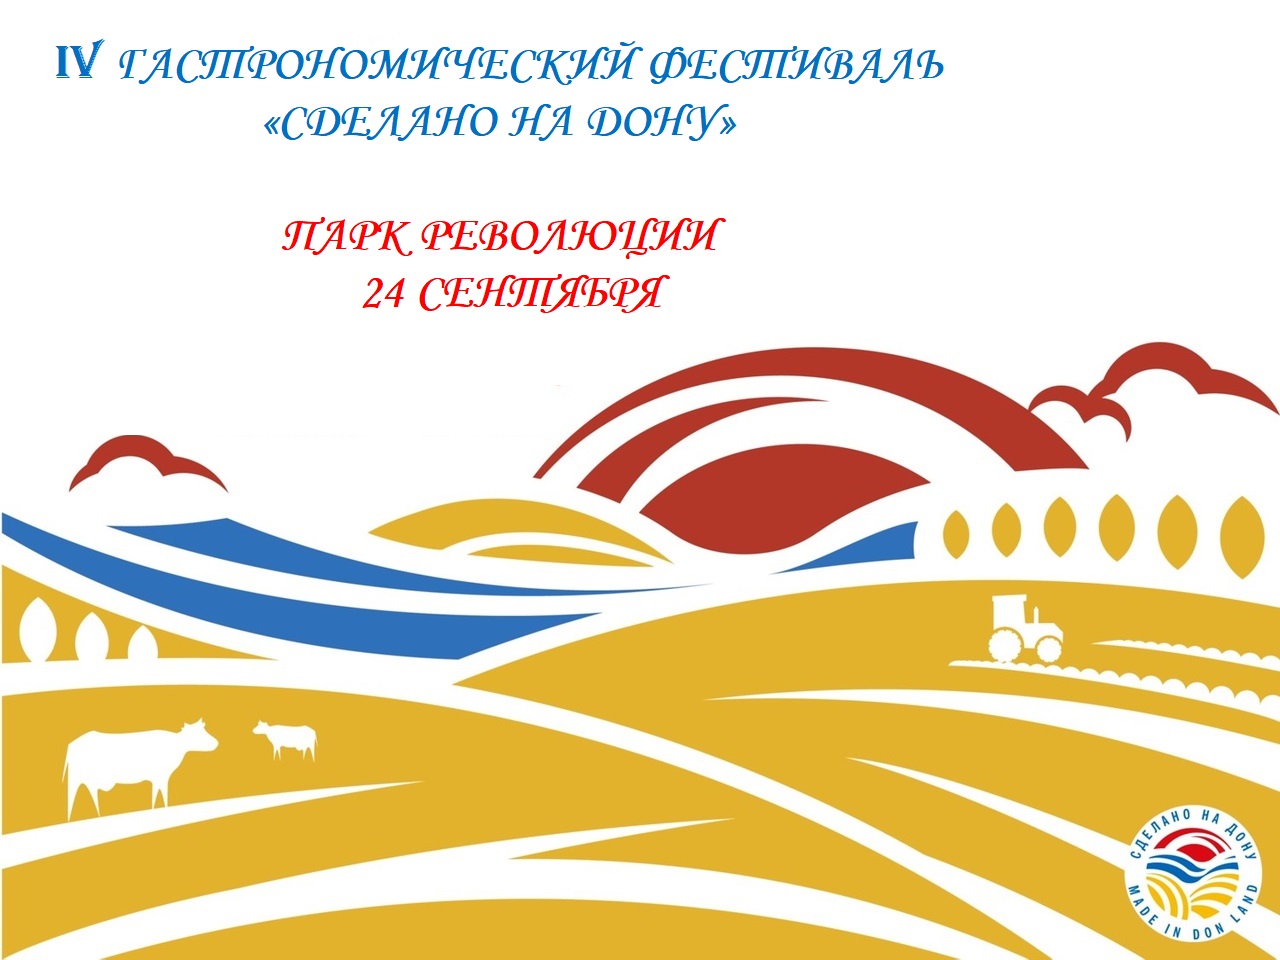 В Ростове-на-Дону состоится IV Гастрономический фестиваль «Сделано на Дону»